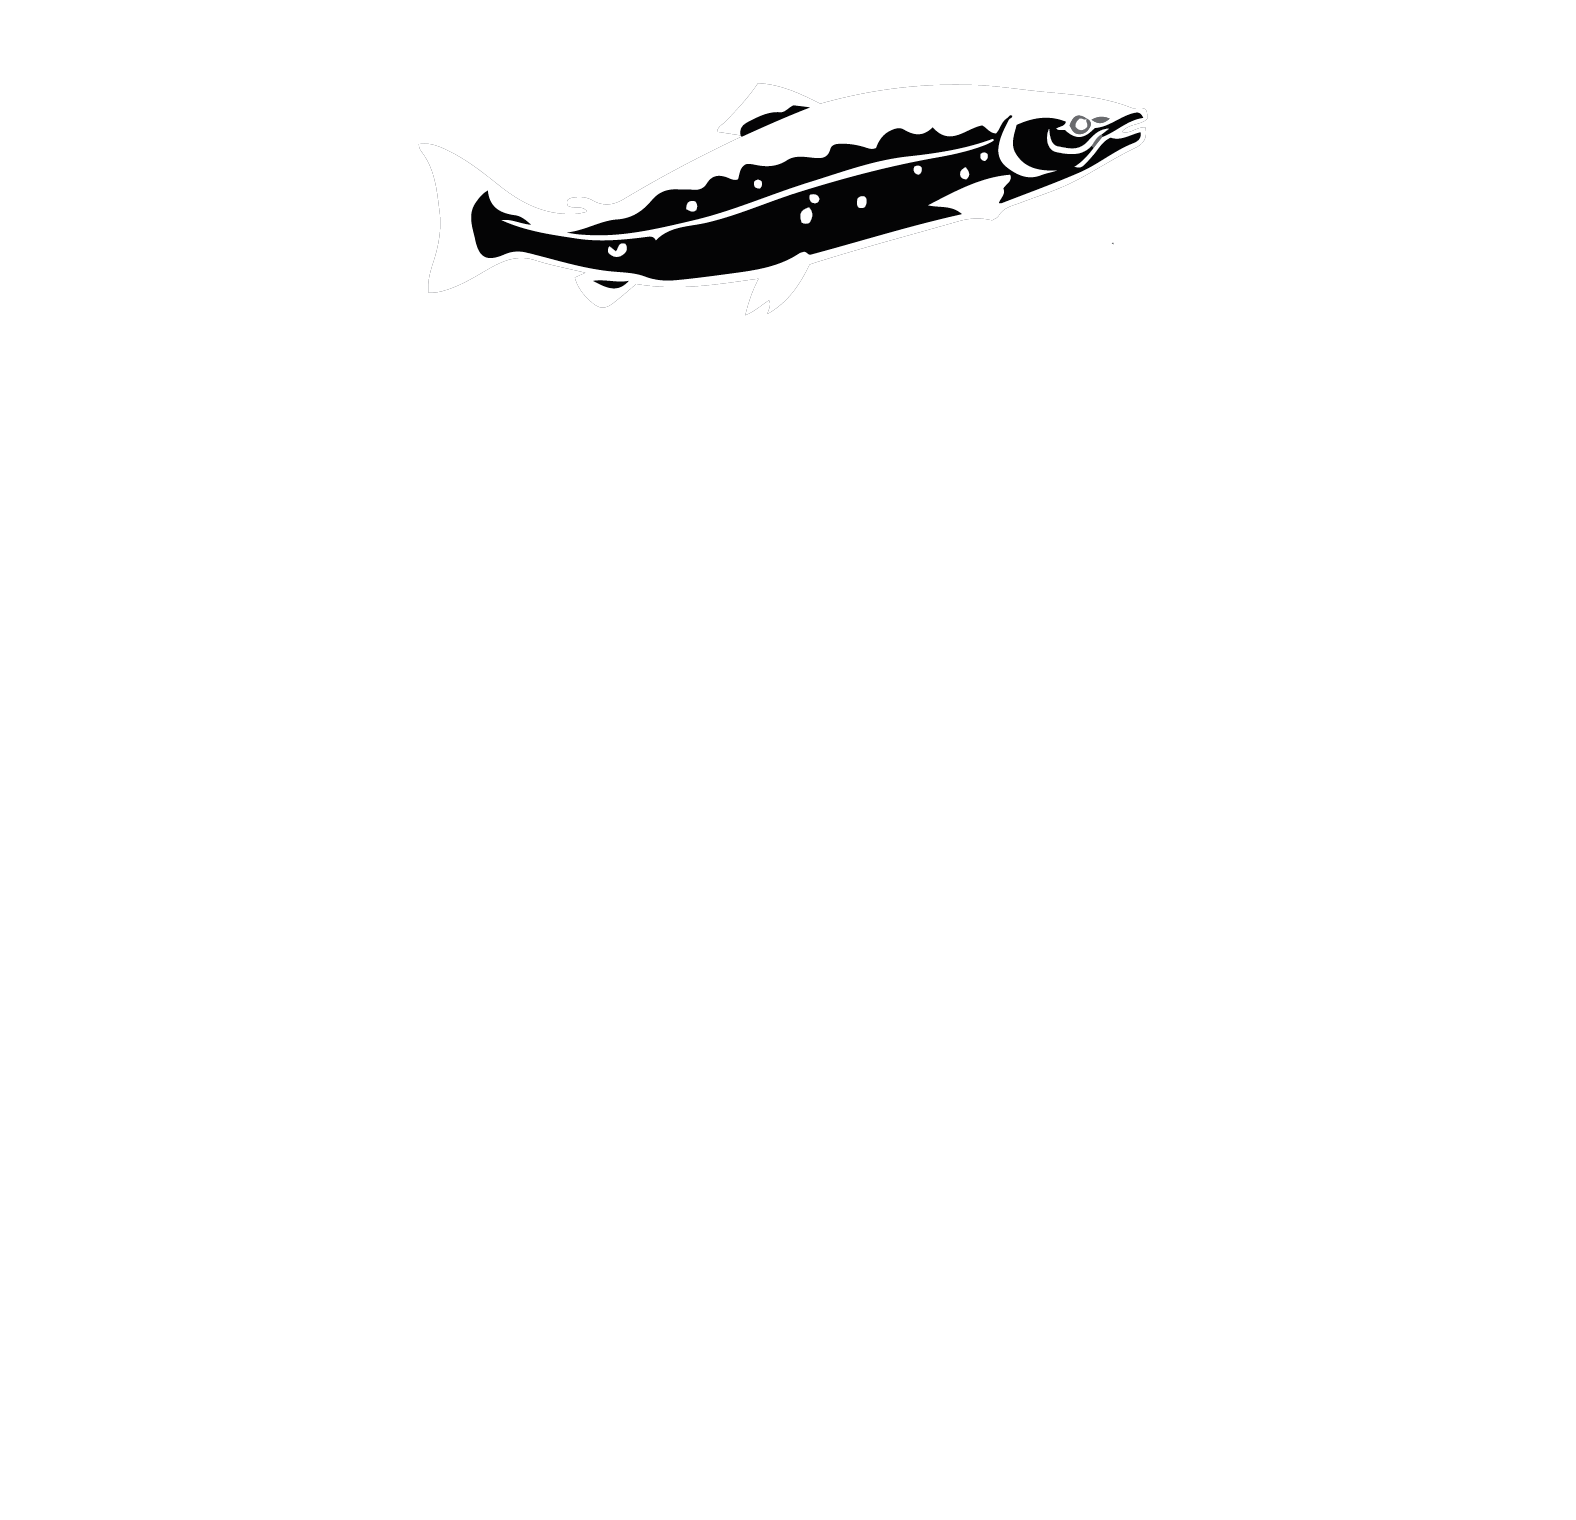 White River Amphitheatre